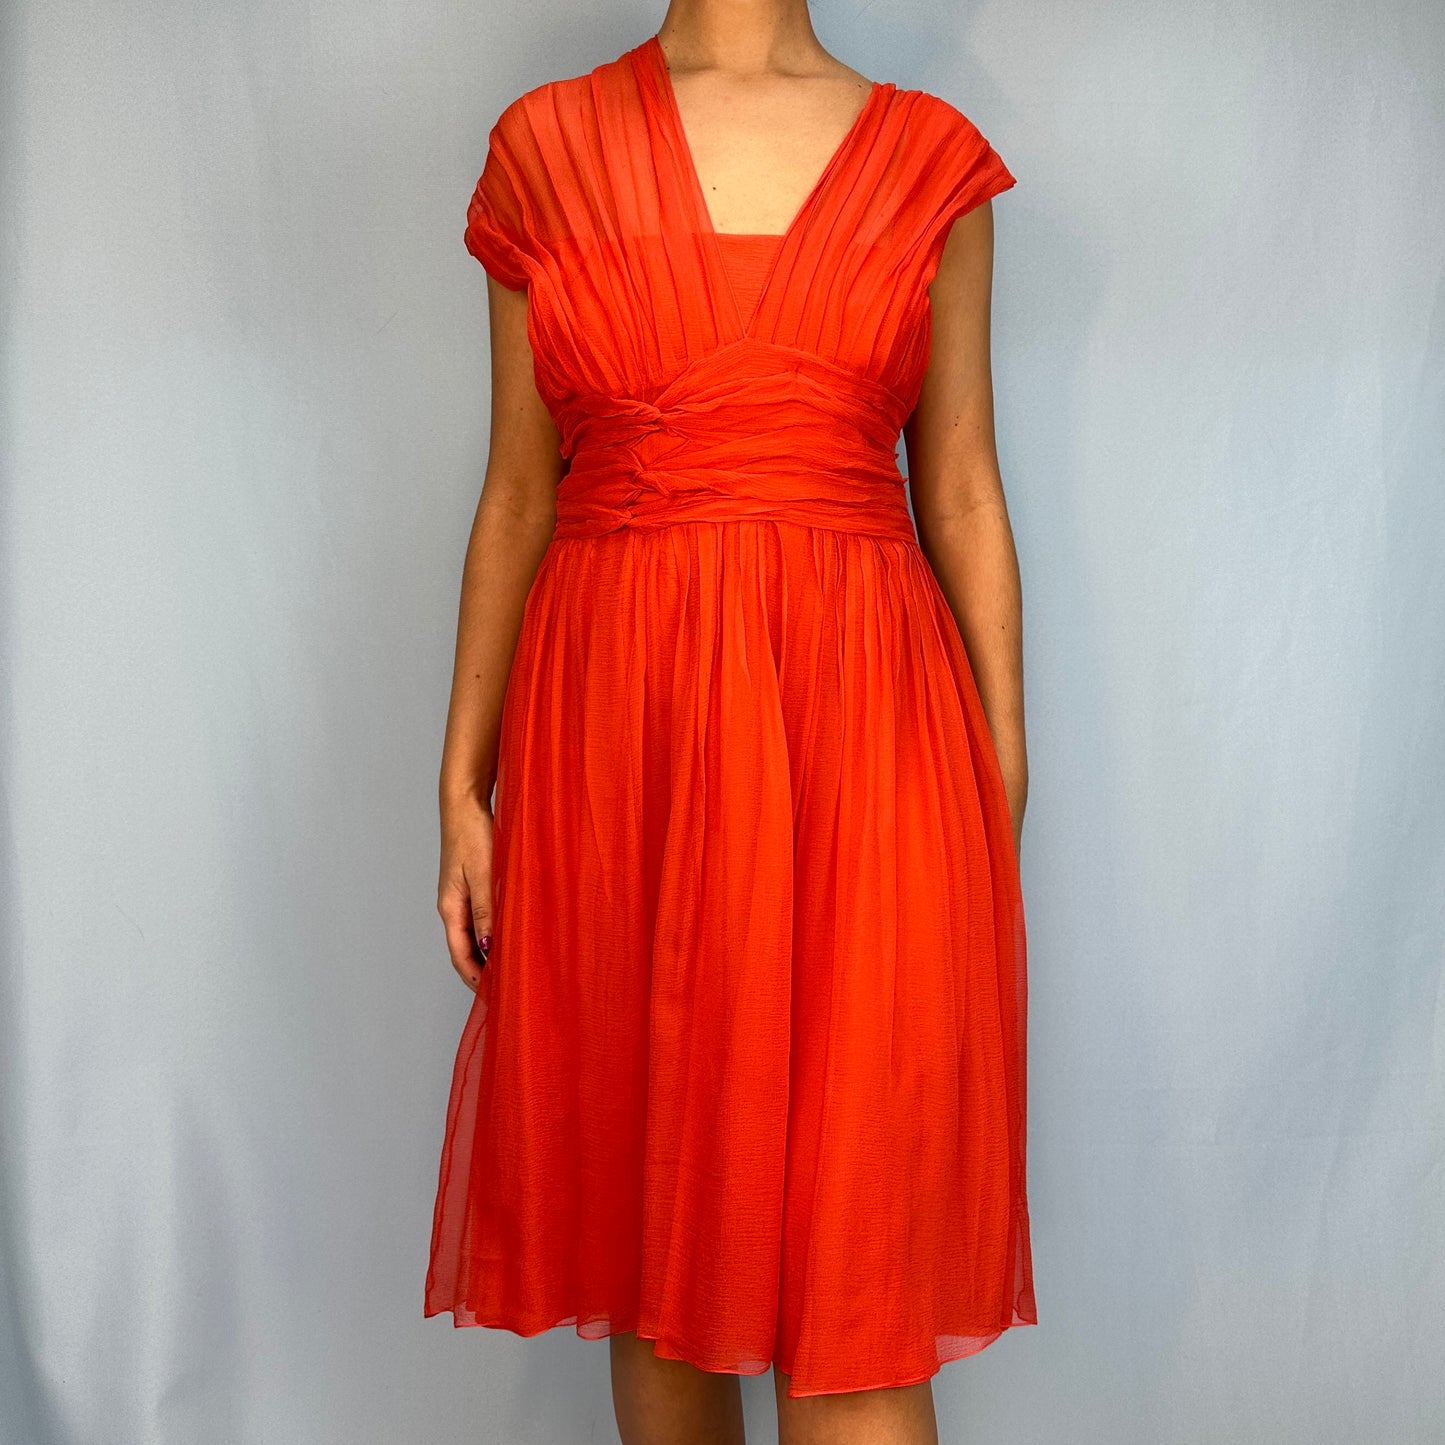 Dior Fall 2007 Orange Silk Chiffon Dress & Scarf